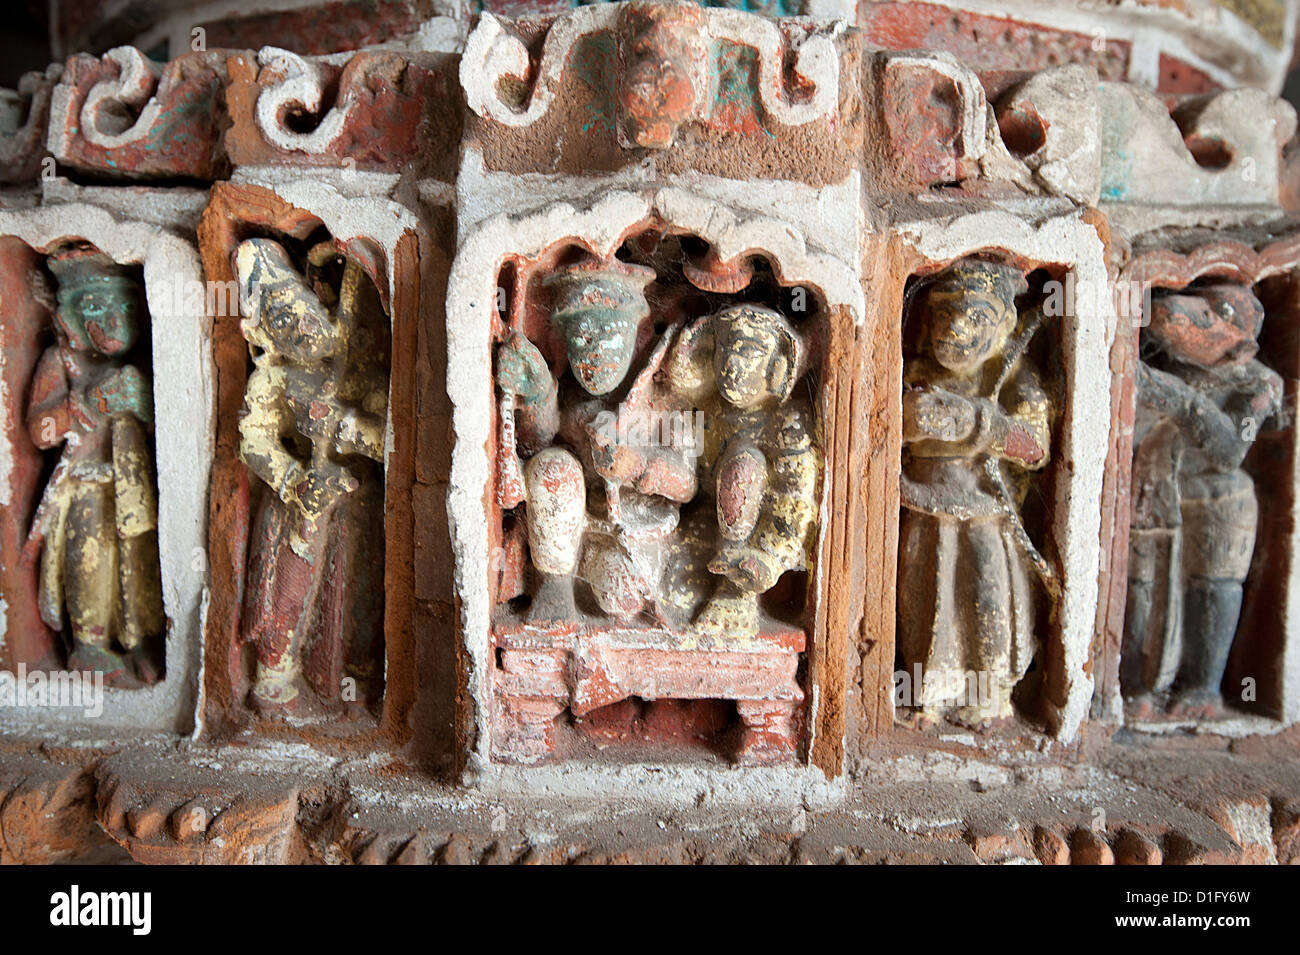 Détail de la terre cuite peinte et sculptée dans le travail Lalji Mandir, un des temples en terre cuite à Kalna, West Bengal, India Banque D'Images